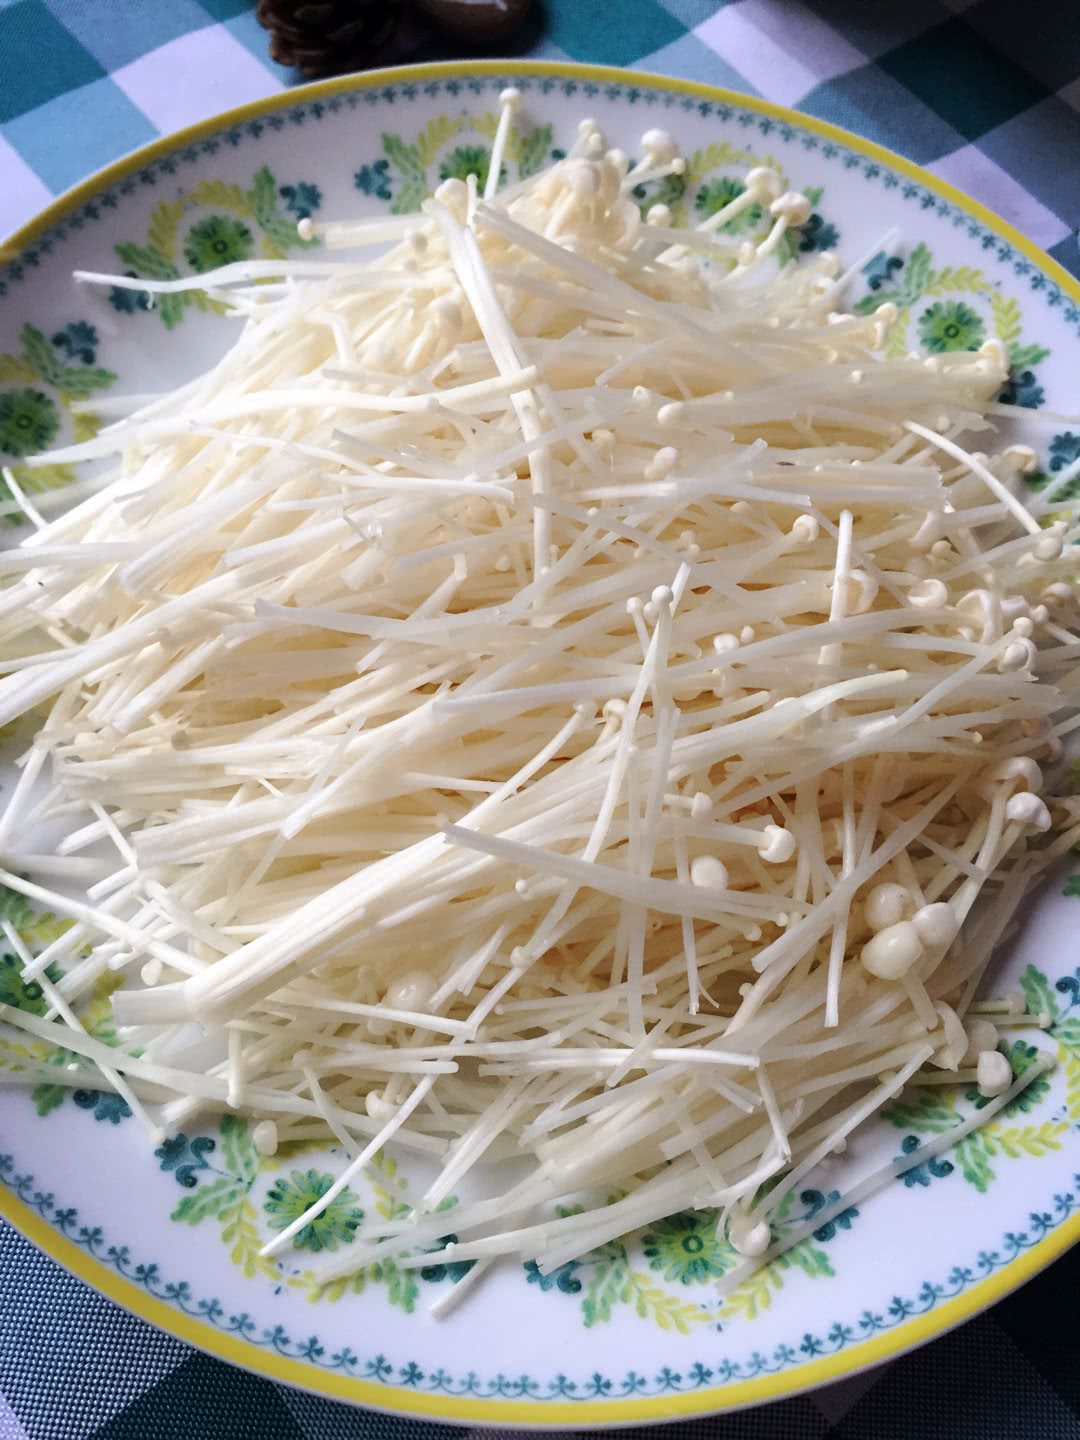 凉拌金针菇怎么做_凉拌金针菇的做法_Ann小叶子_豆果美食